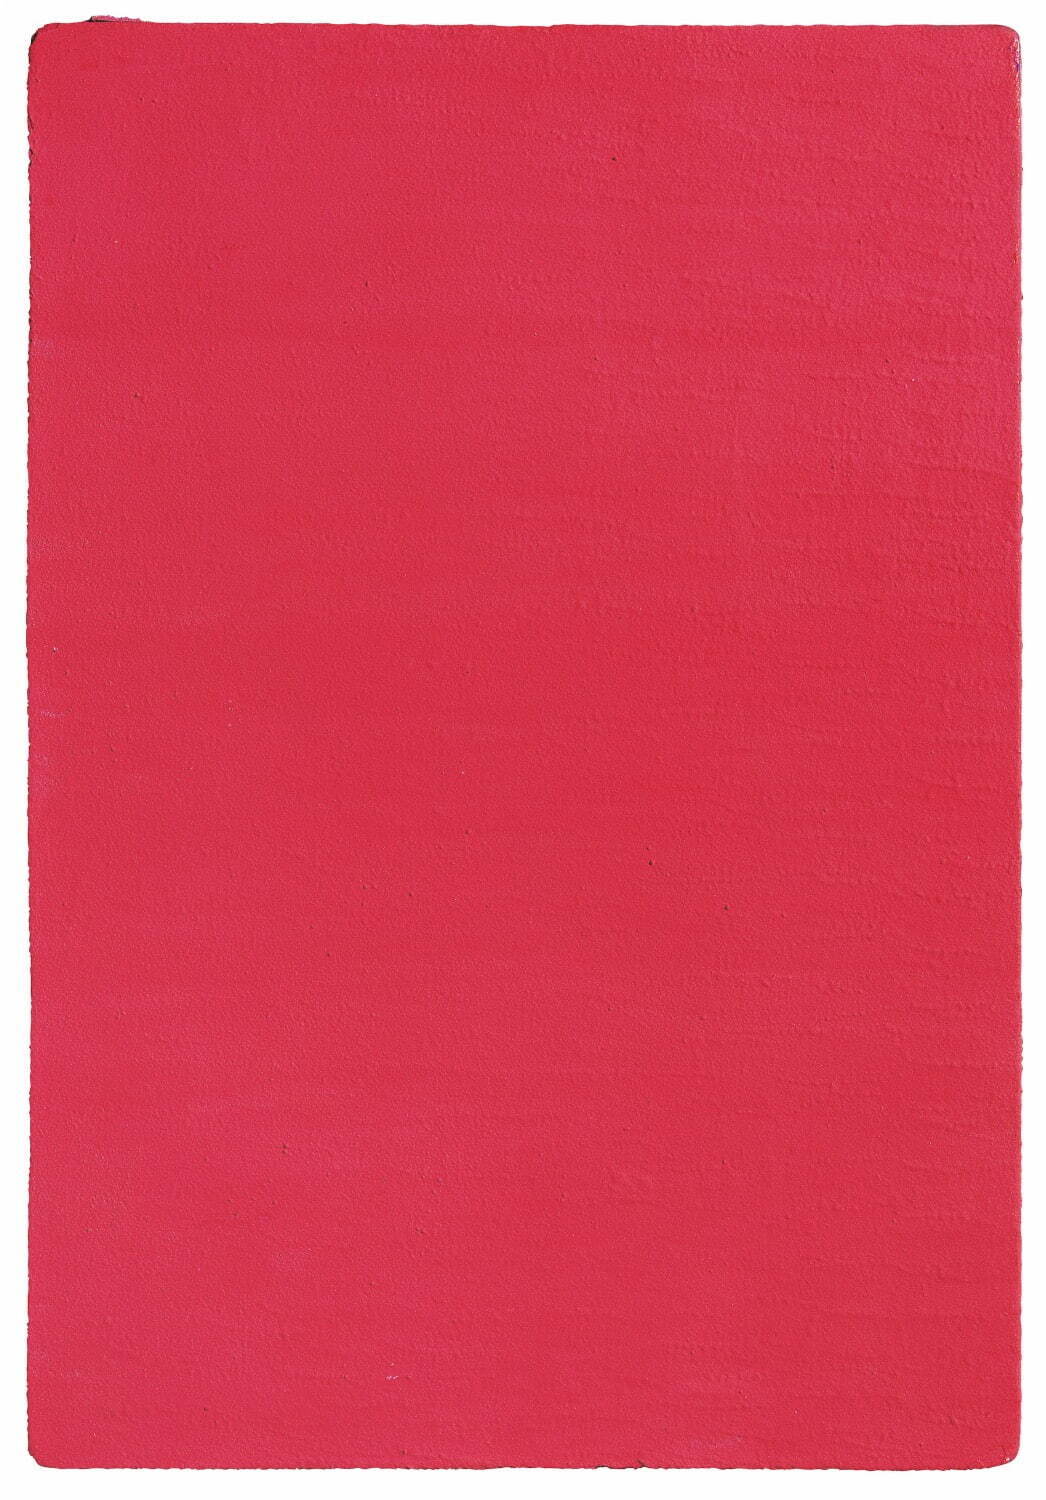 イヴ・クライン《無題(薔薇色のモノクローム)》1957年
純顔料、合成樹脂、ガーゼ／イソレルマウント 76×52×0.8cm
イヴ・クライン・アーカイブス蔵